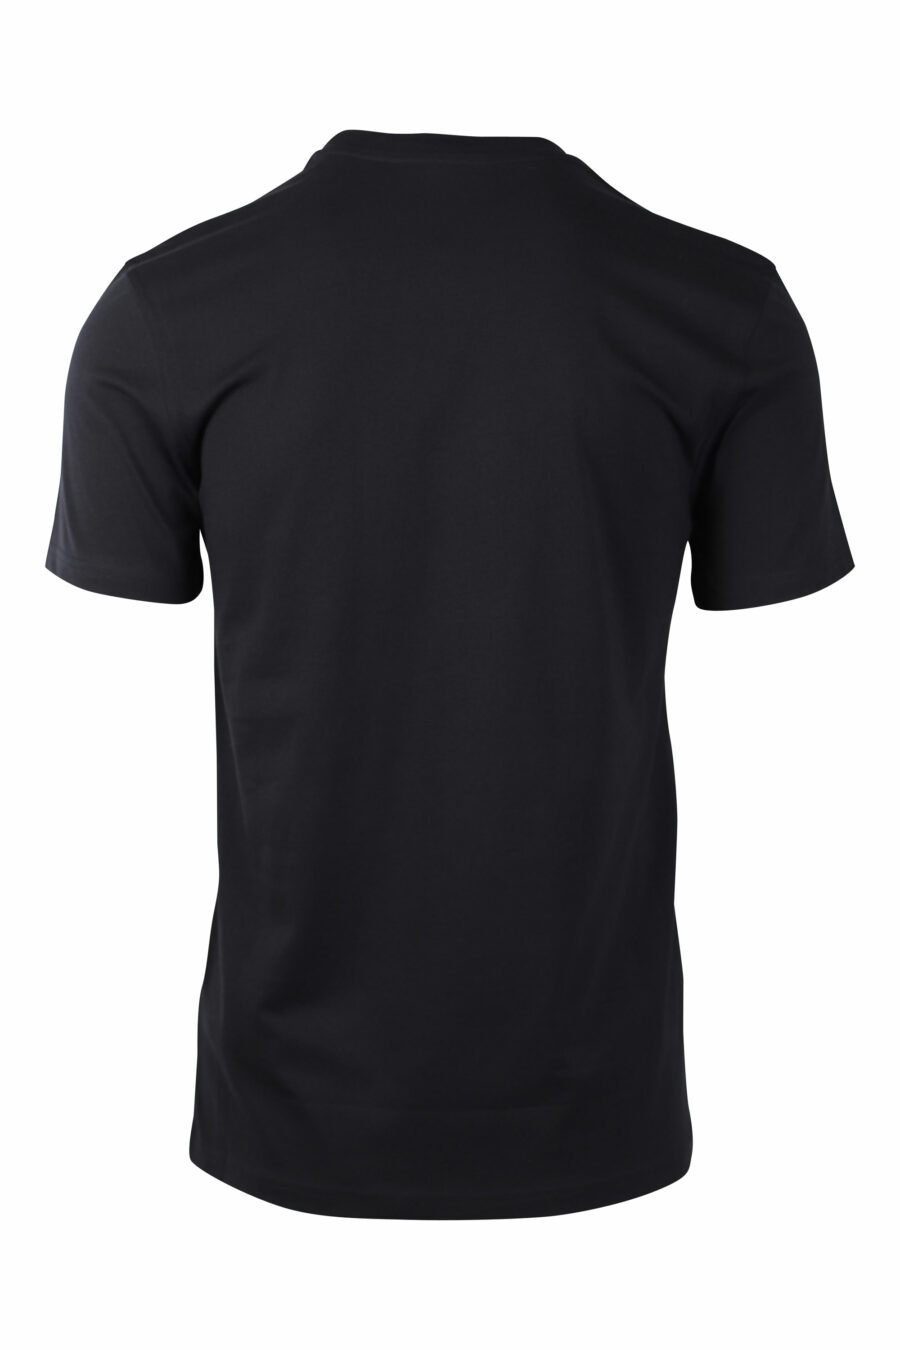 T-shirt preta com maxilogue prateado - IMG 1468